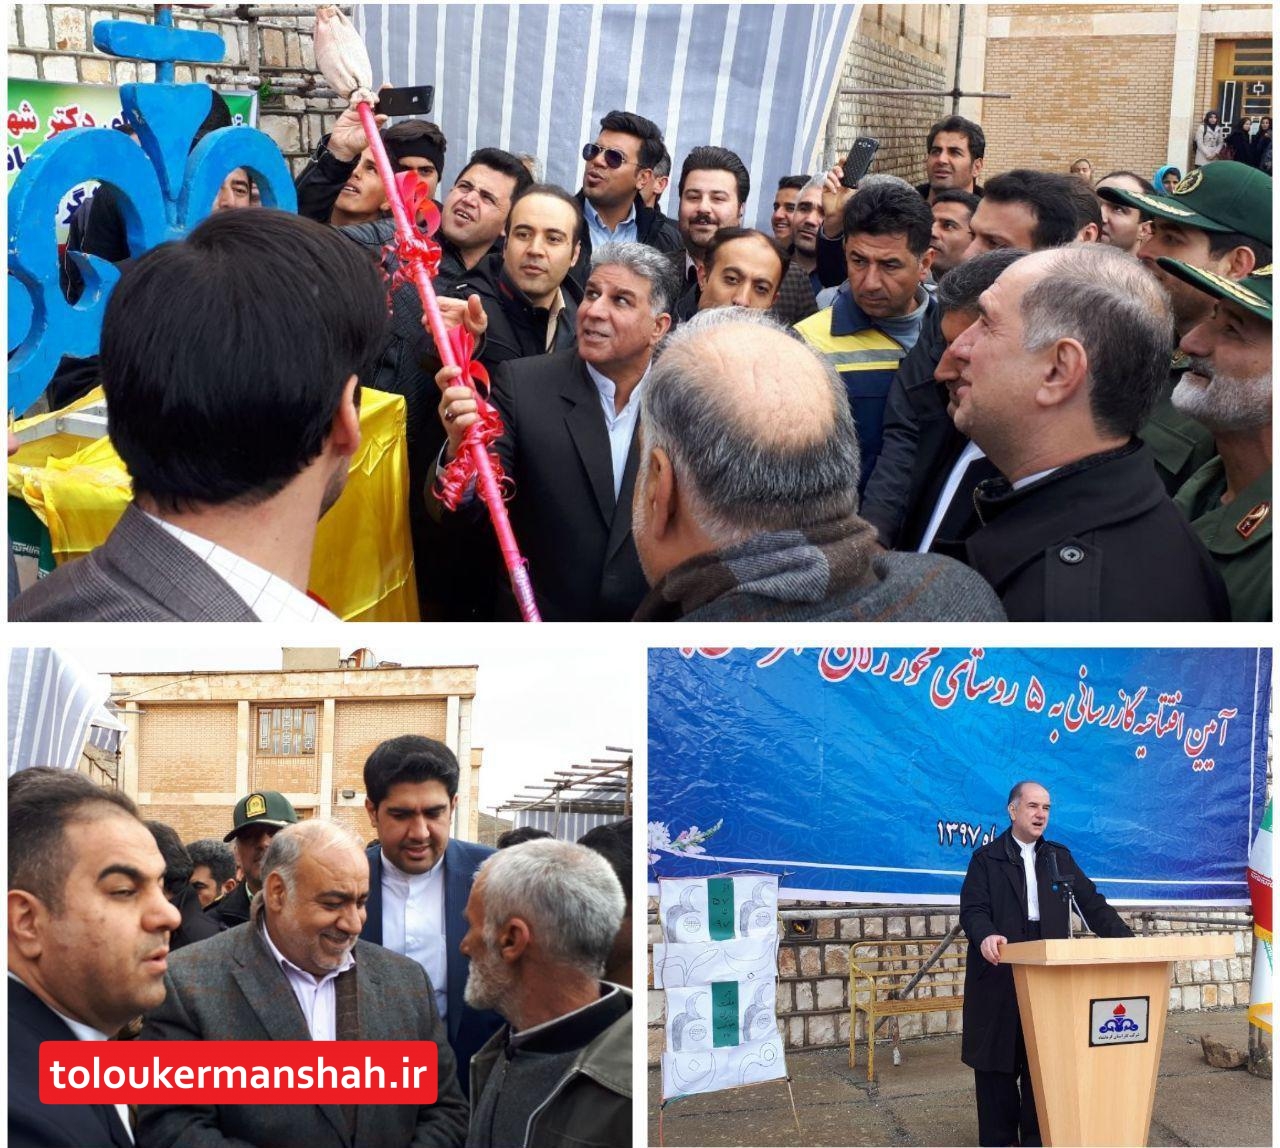 استاندار کرمانشاه در صدر هیأتی برای بازدید و افتتاح چند پروژه عمرانی وارد جوانرود شد